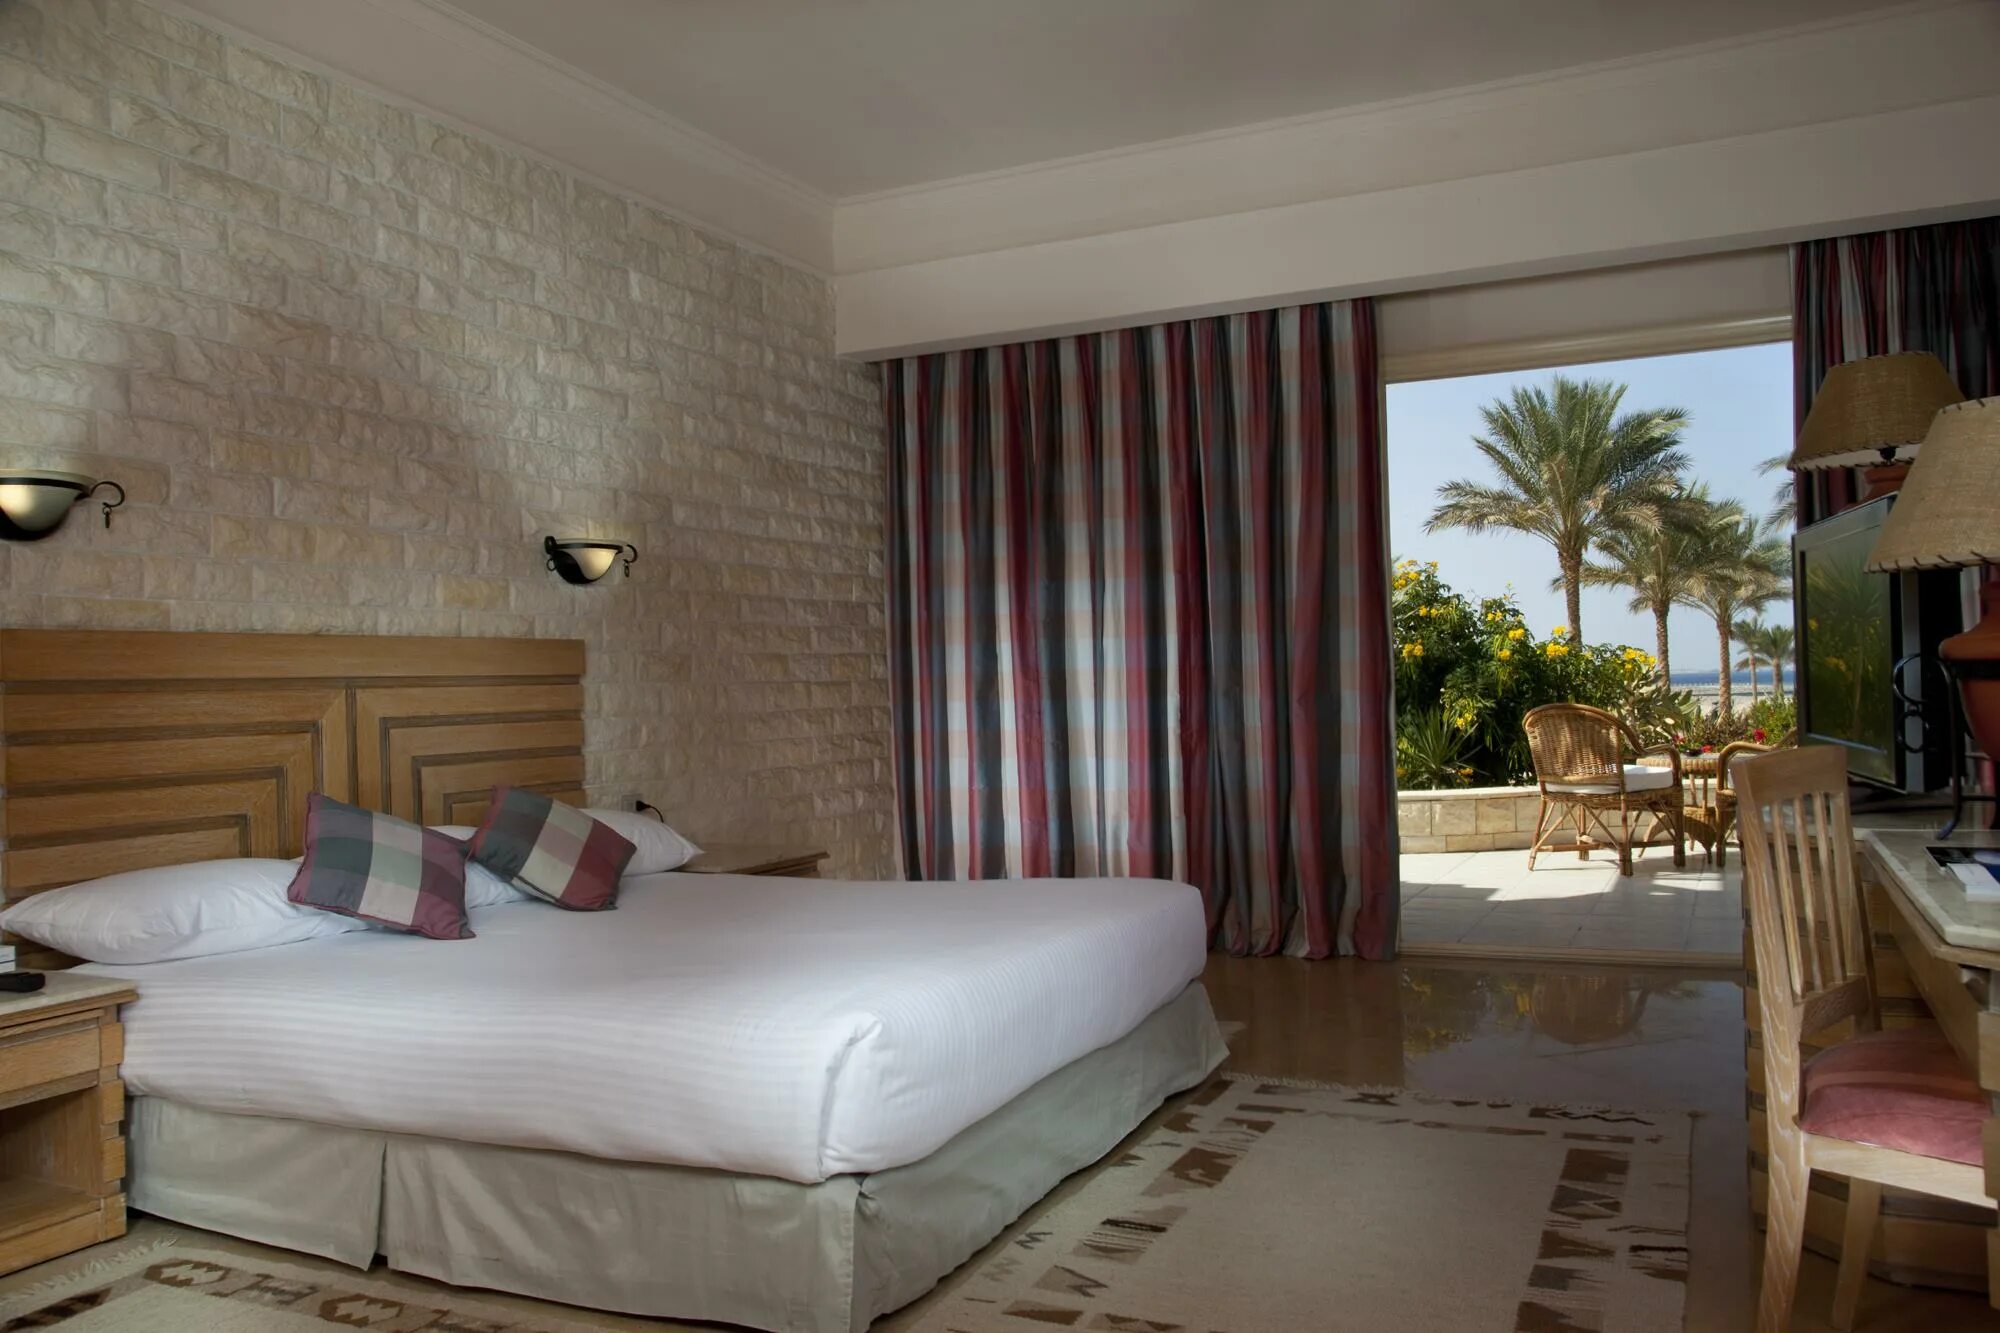 Отель Coral Beach Resort Hurghada. Отель Coral Beach Hotel Hurghada 4*. Ротана Хургада отель Корал Бич. Coral Beach Rotana Resort 4 Египет Хургада.